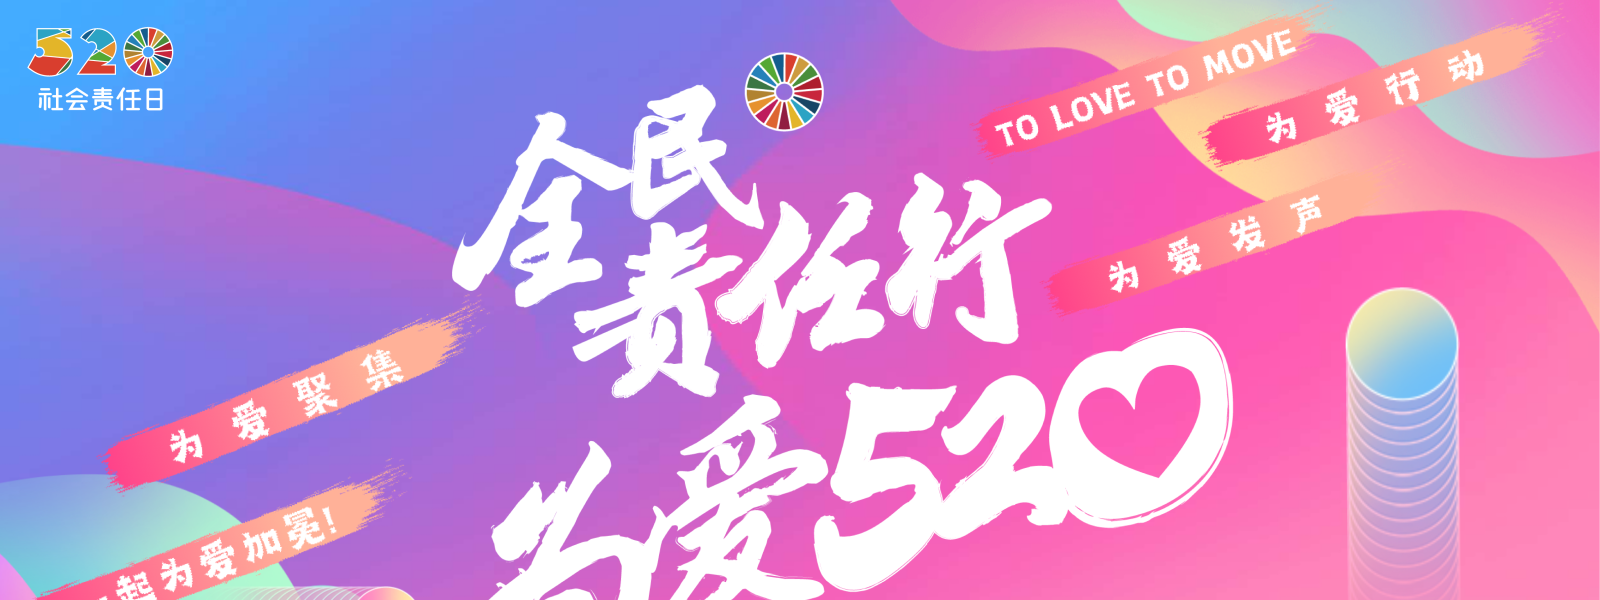 让责任成为一种流行文化 | 520社会责任日“仲夏夜”在京成功举办